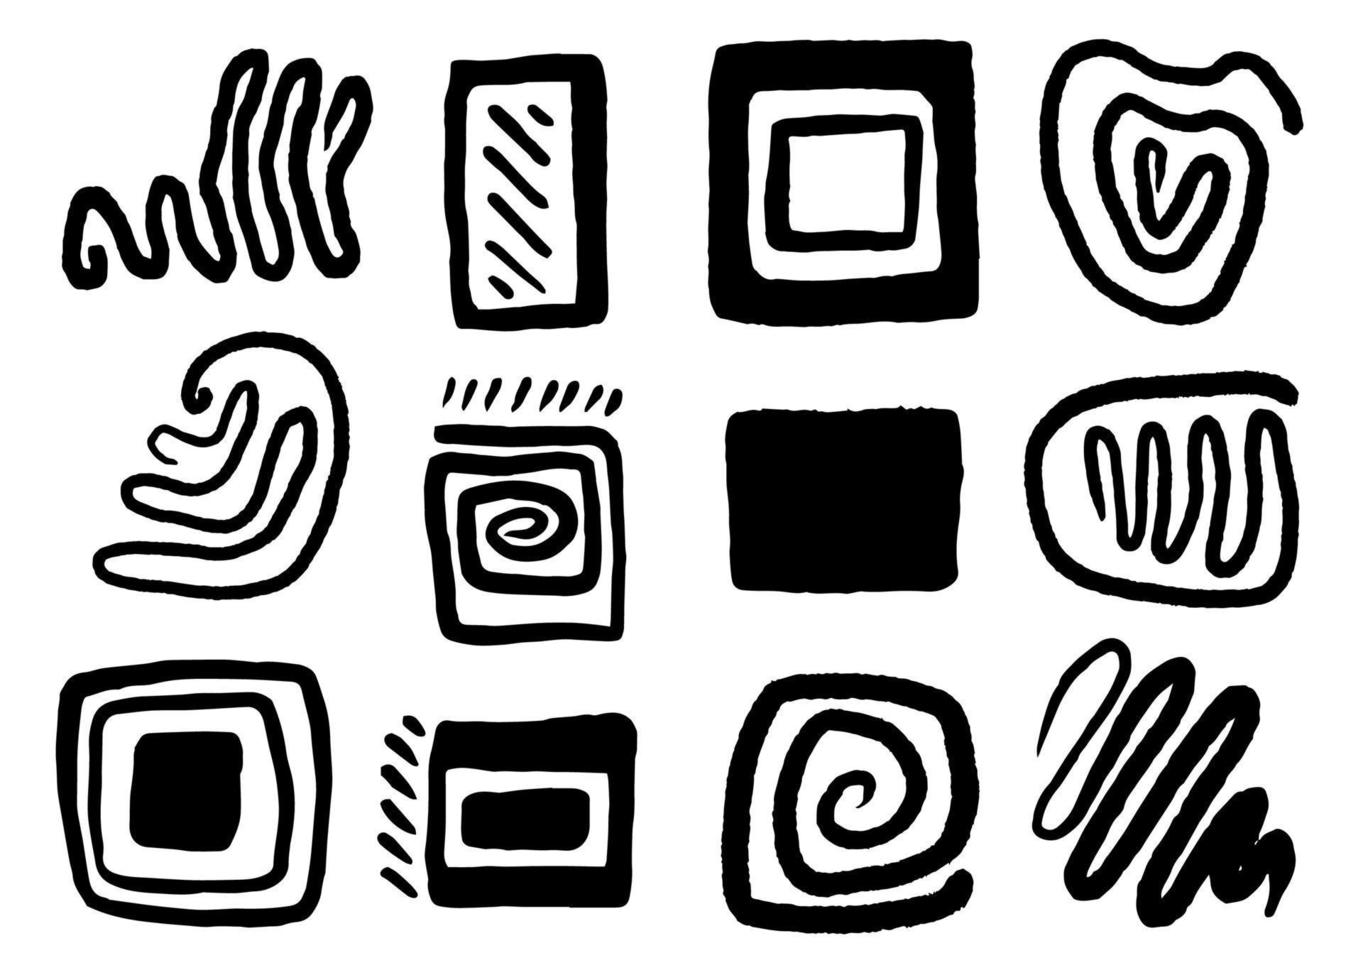 conjunto de símbolos antigos desenhados em estilo doodle vetor